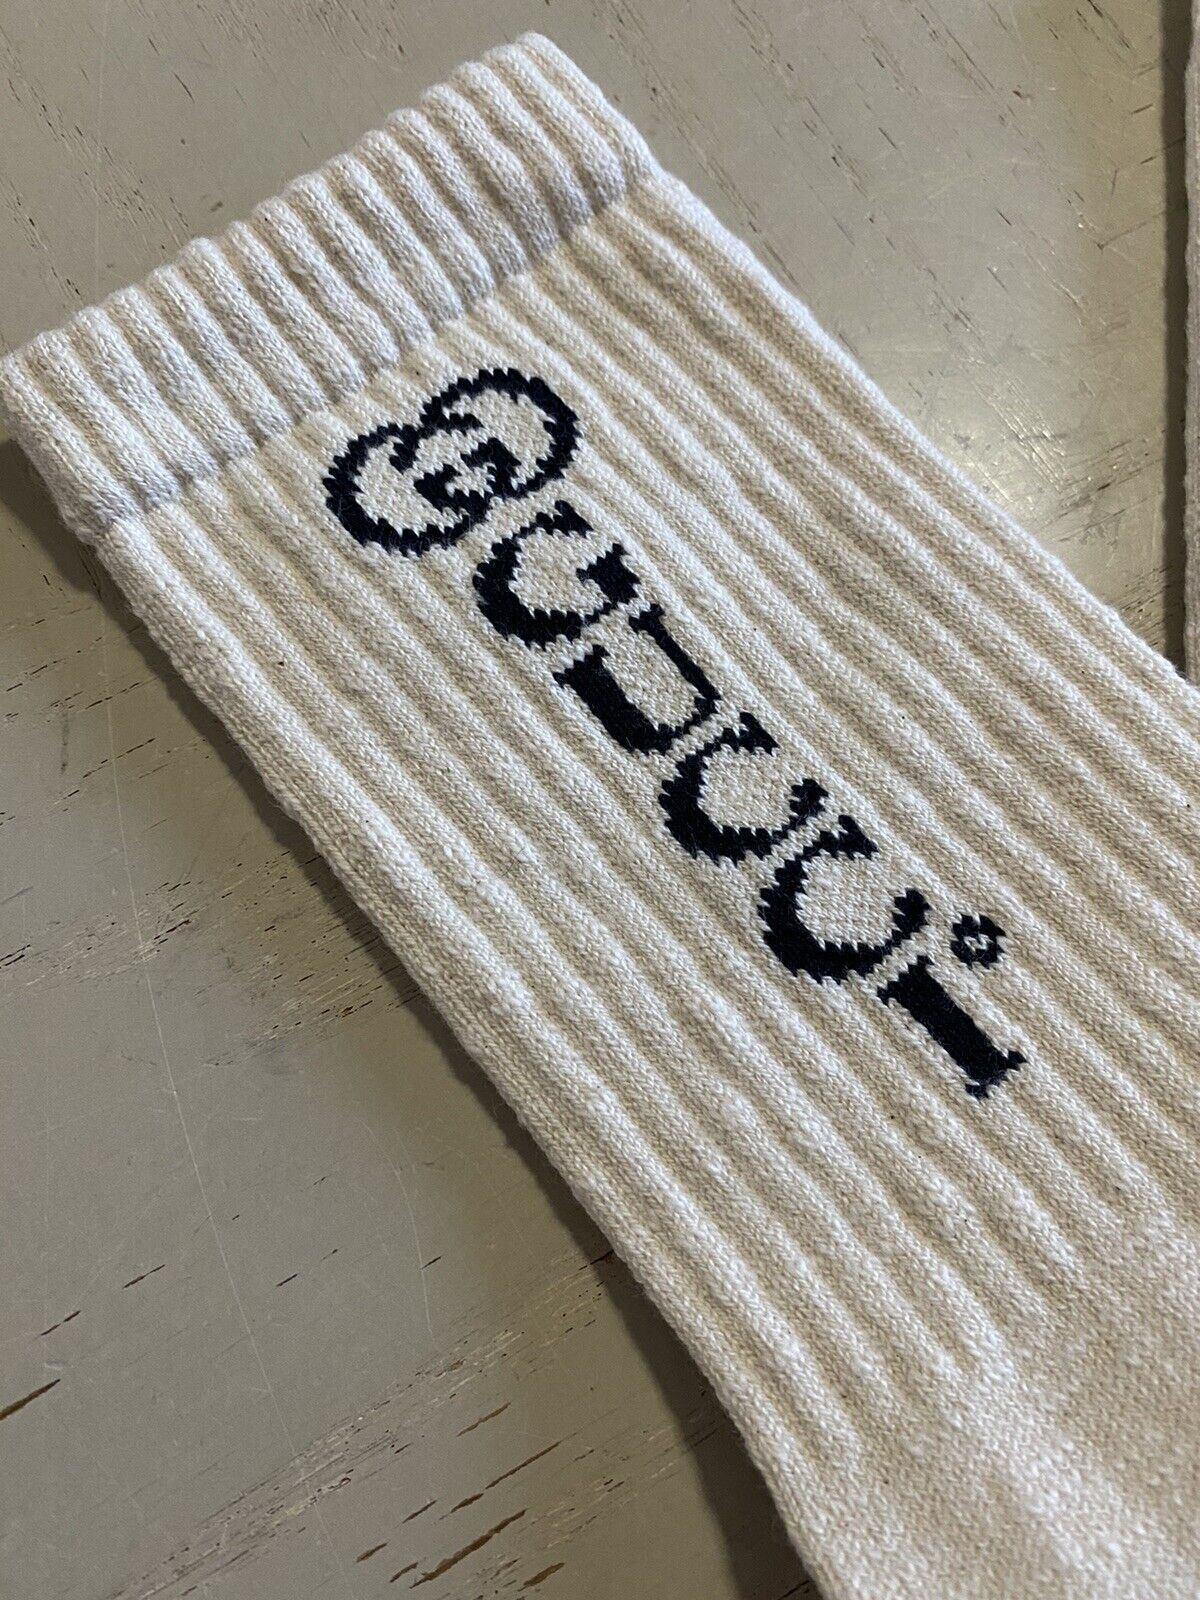 Мужские хлопковые носки NWT Gucci с монограммой GG, белый/молочный, размер M, Италия